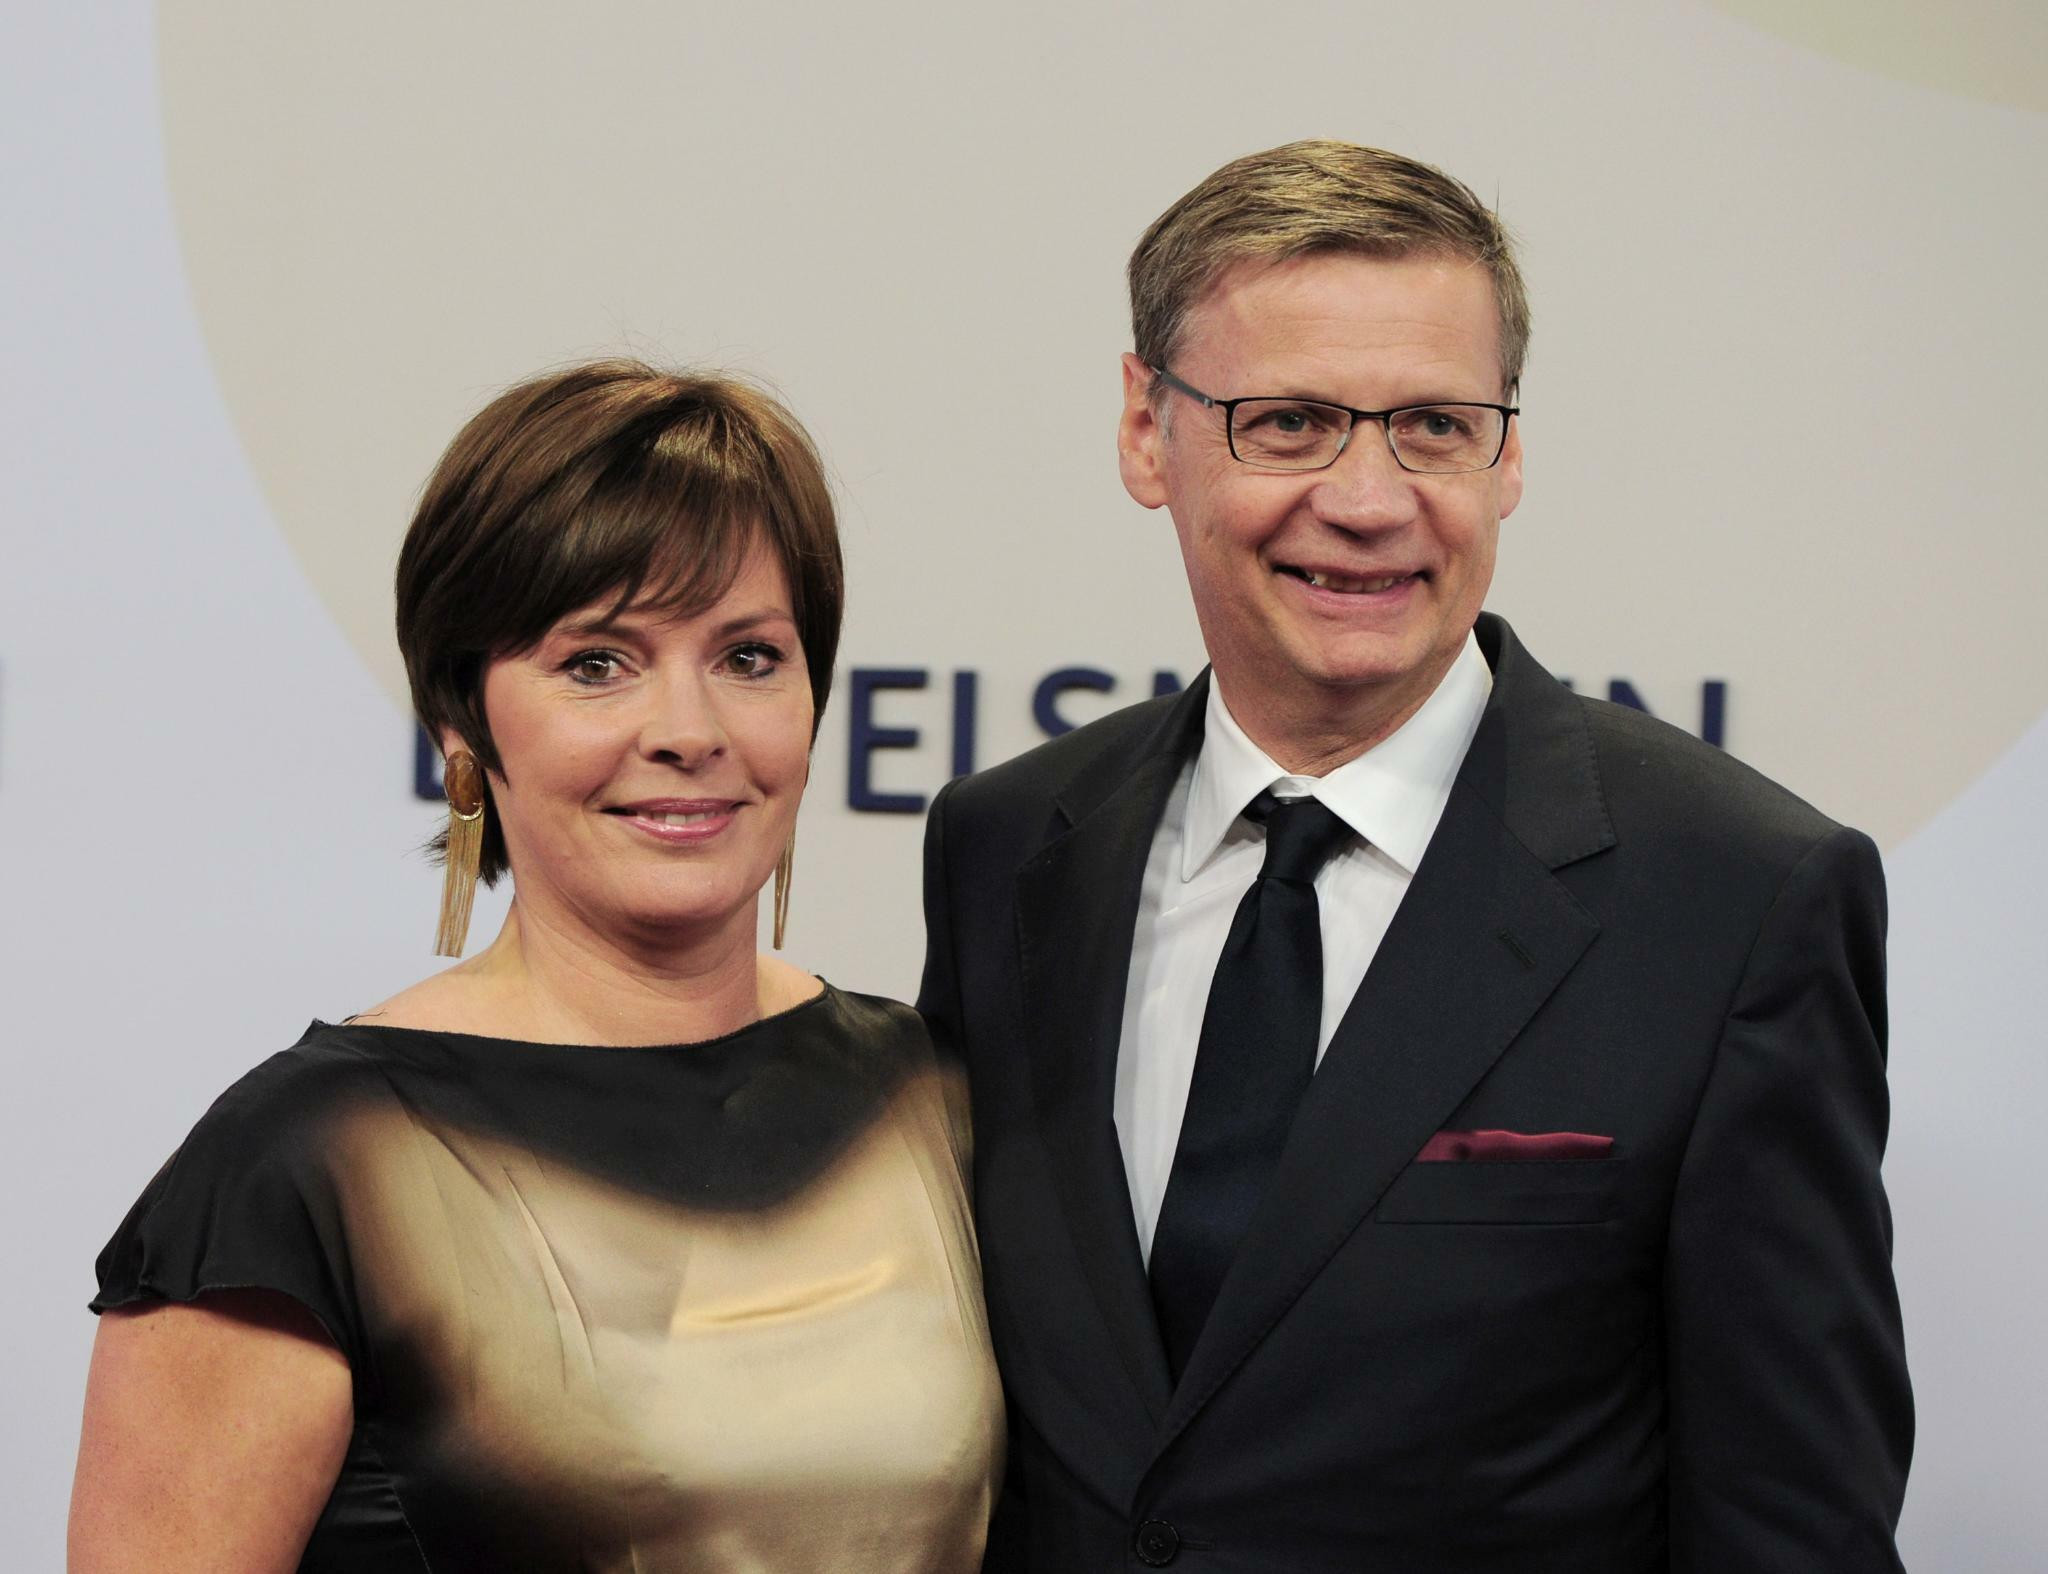 Günther Jauch Hochzeit
 Rechtsstreit mit Jauch Günther Jauch und seine Frau